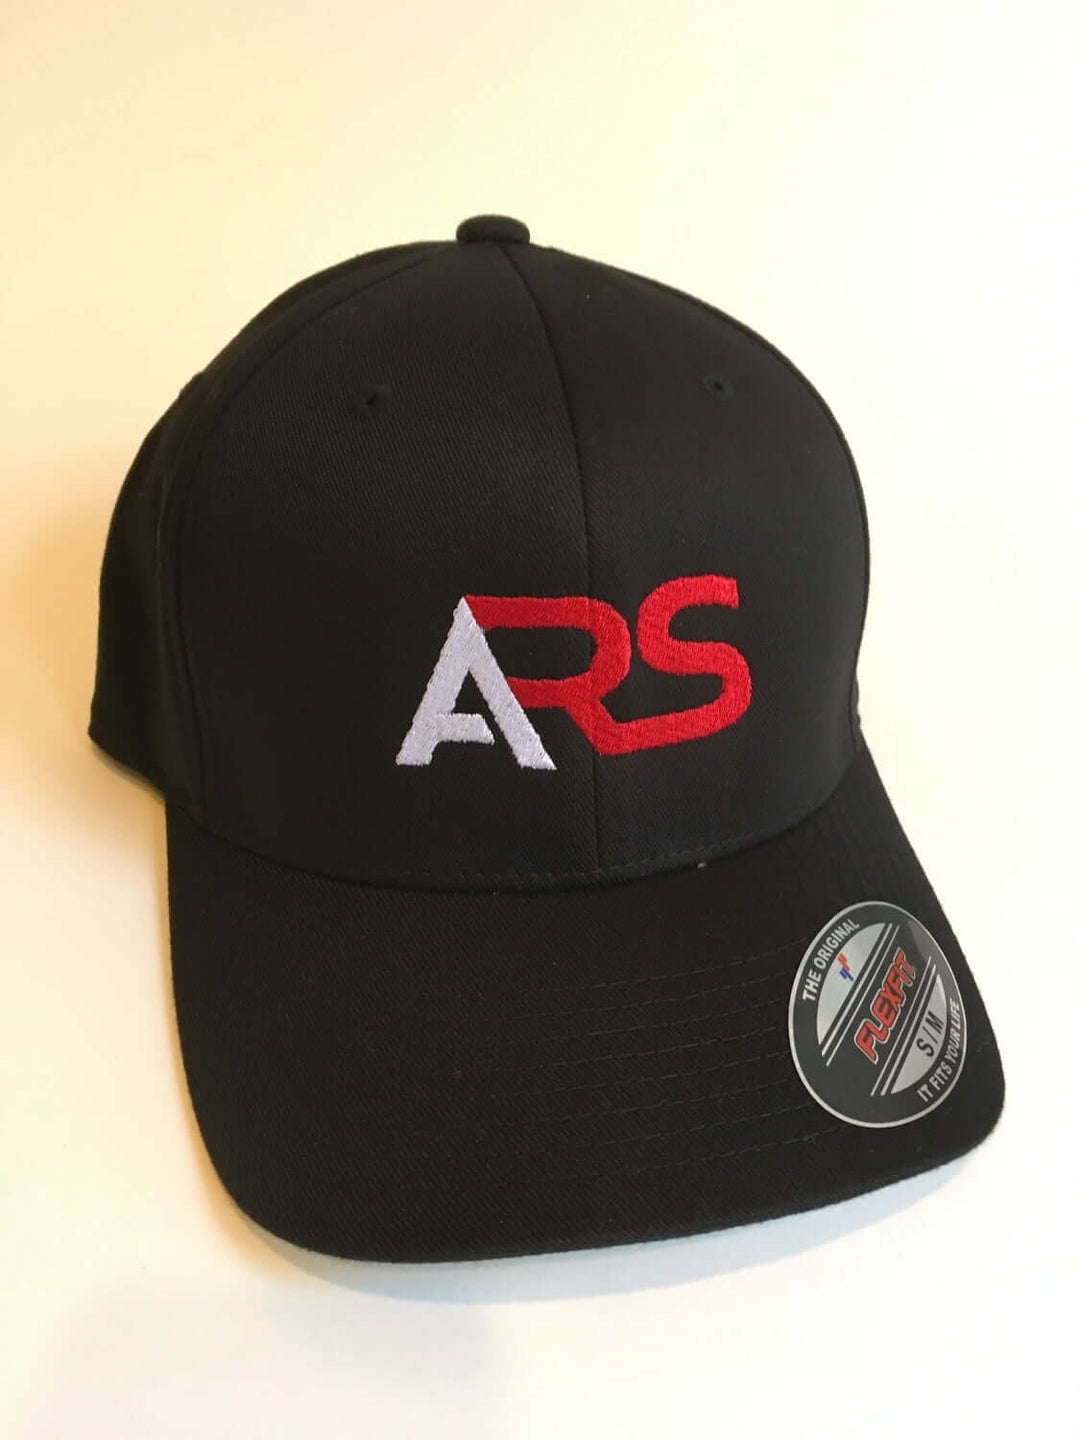 Anderson Rescue Solutions black flexfit hat